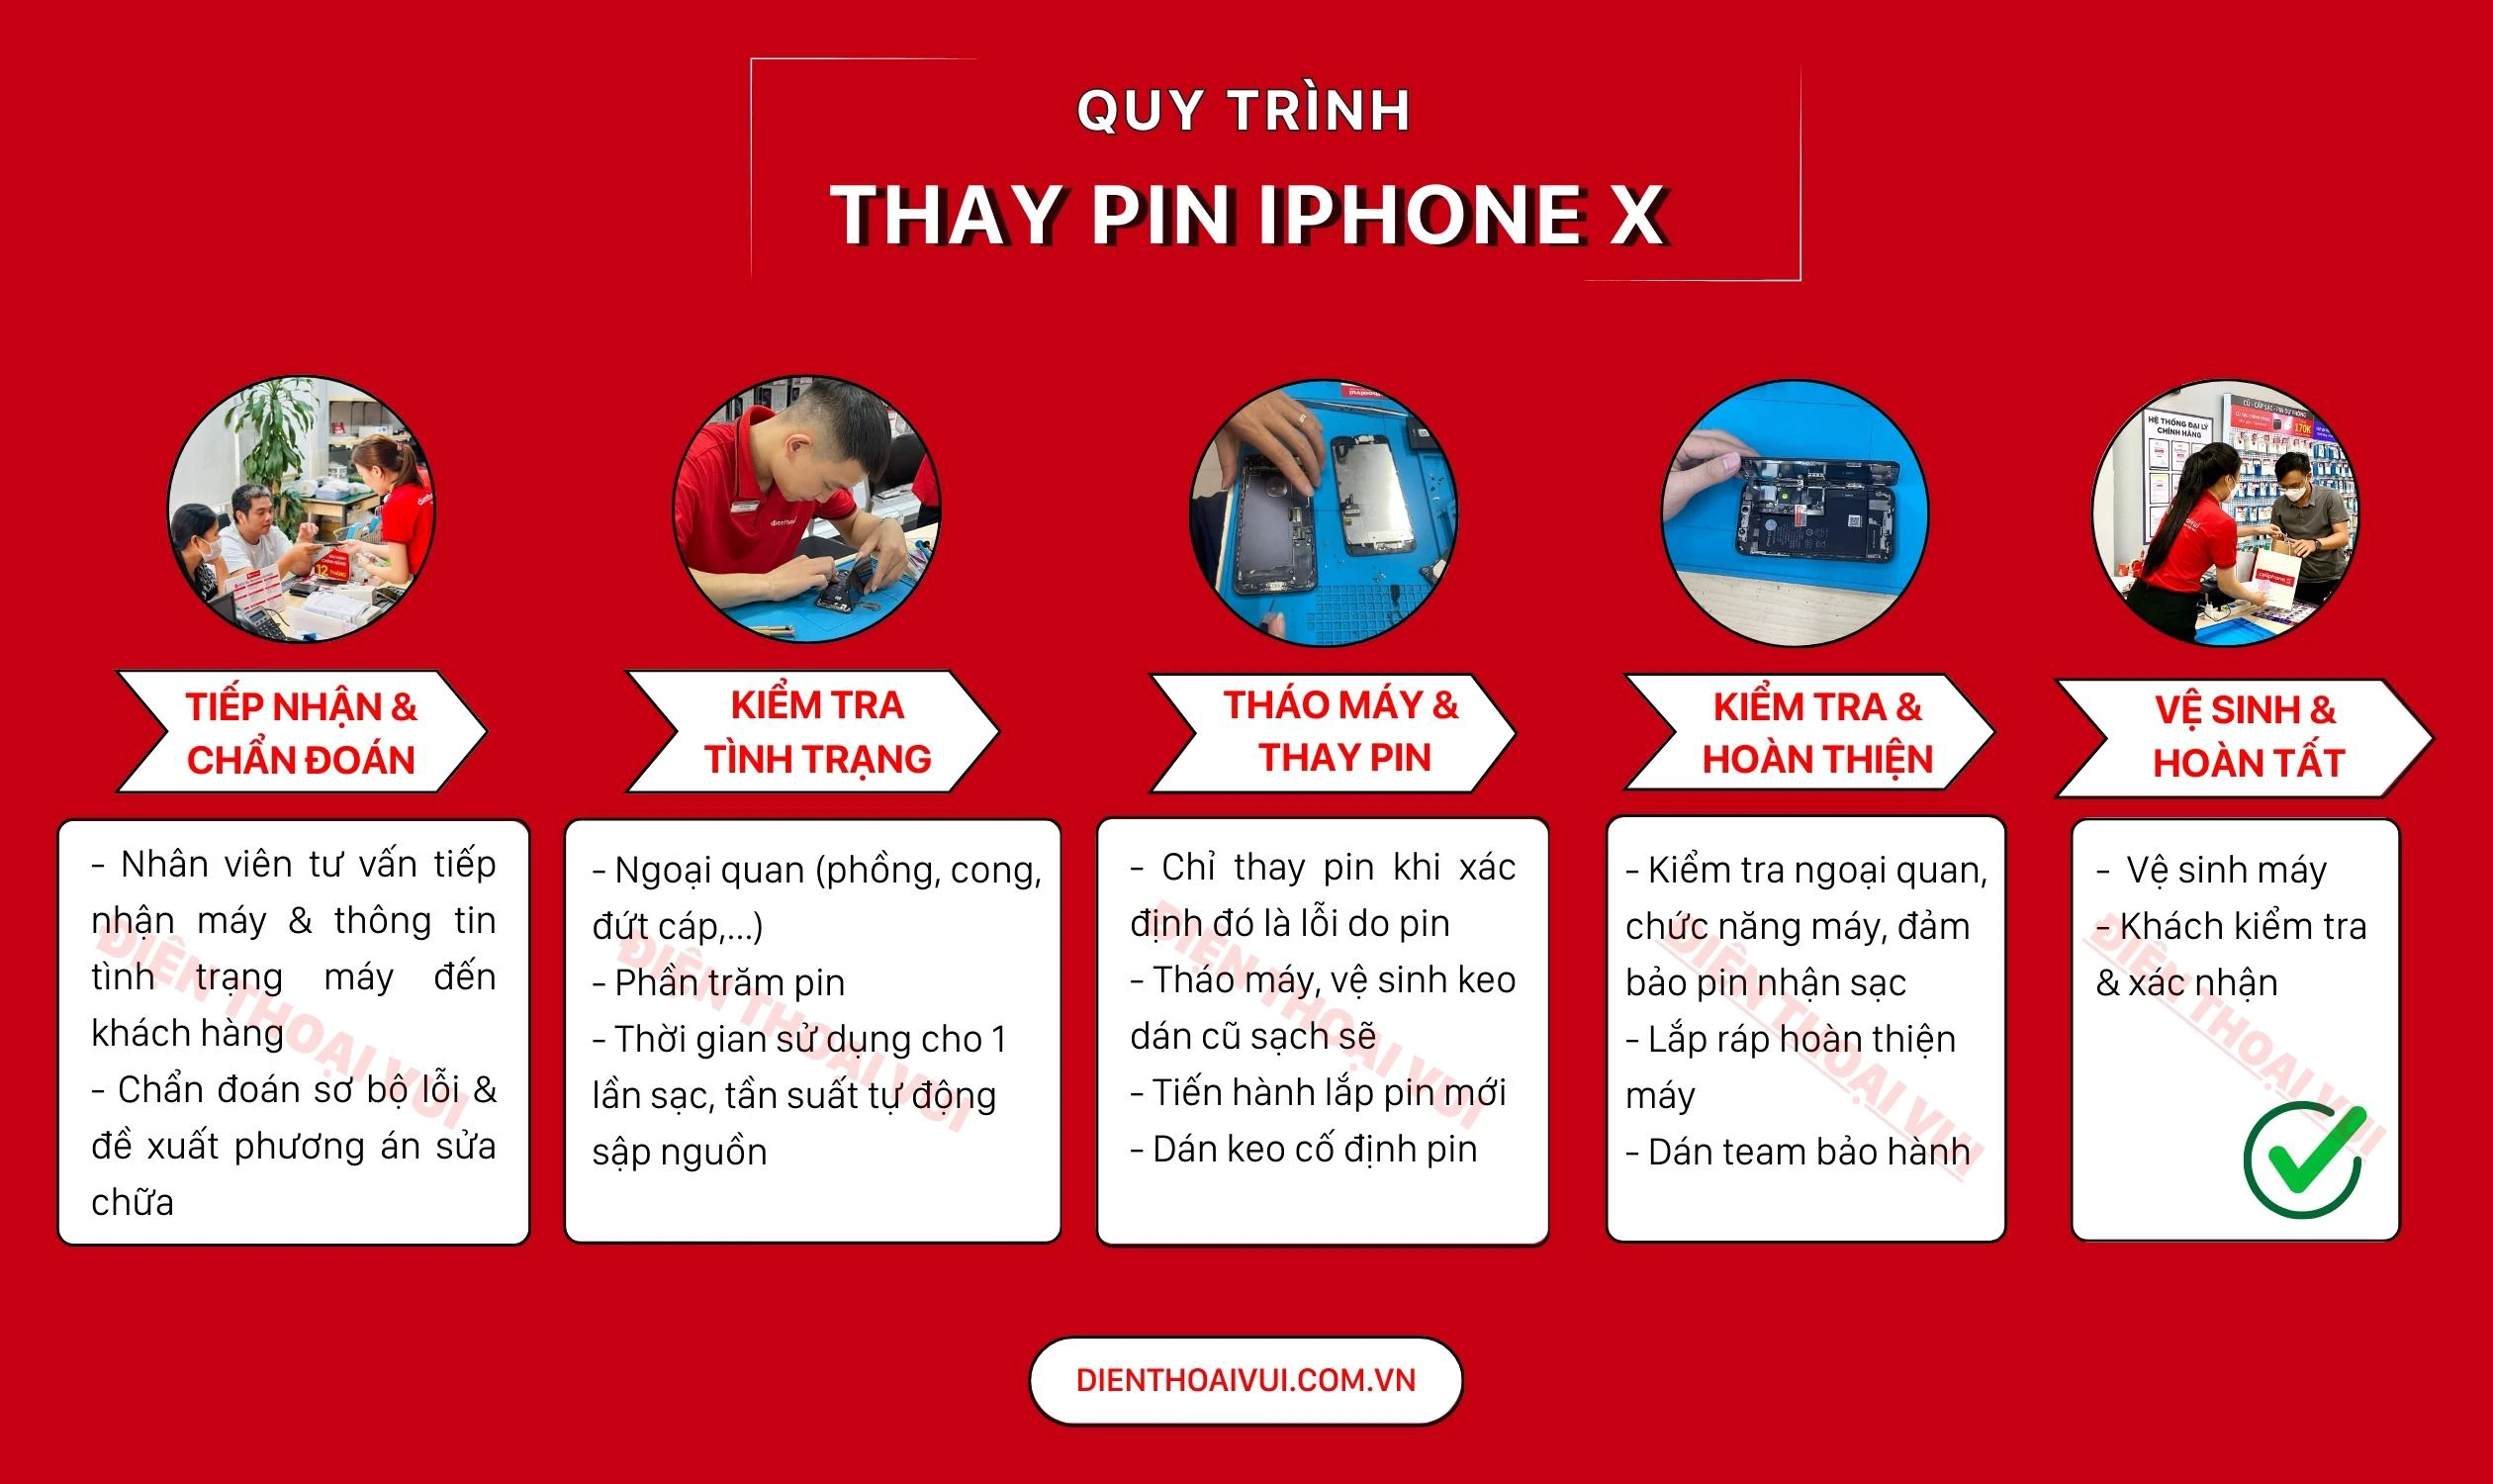 Quy trình thay pin iPhone X tại Điện Thoại Vui